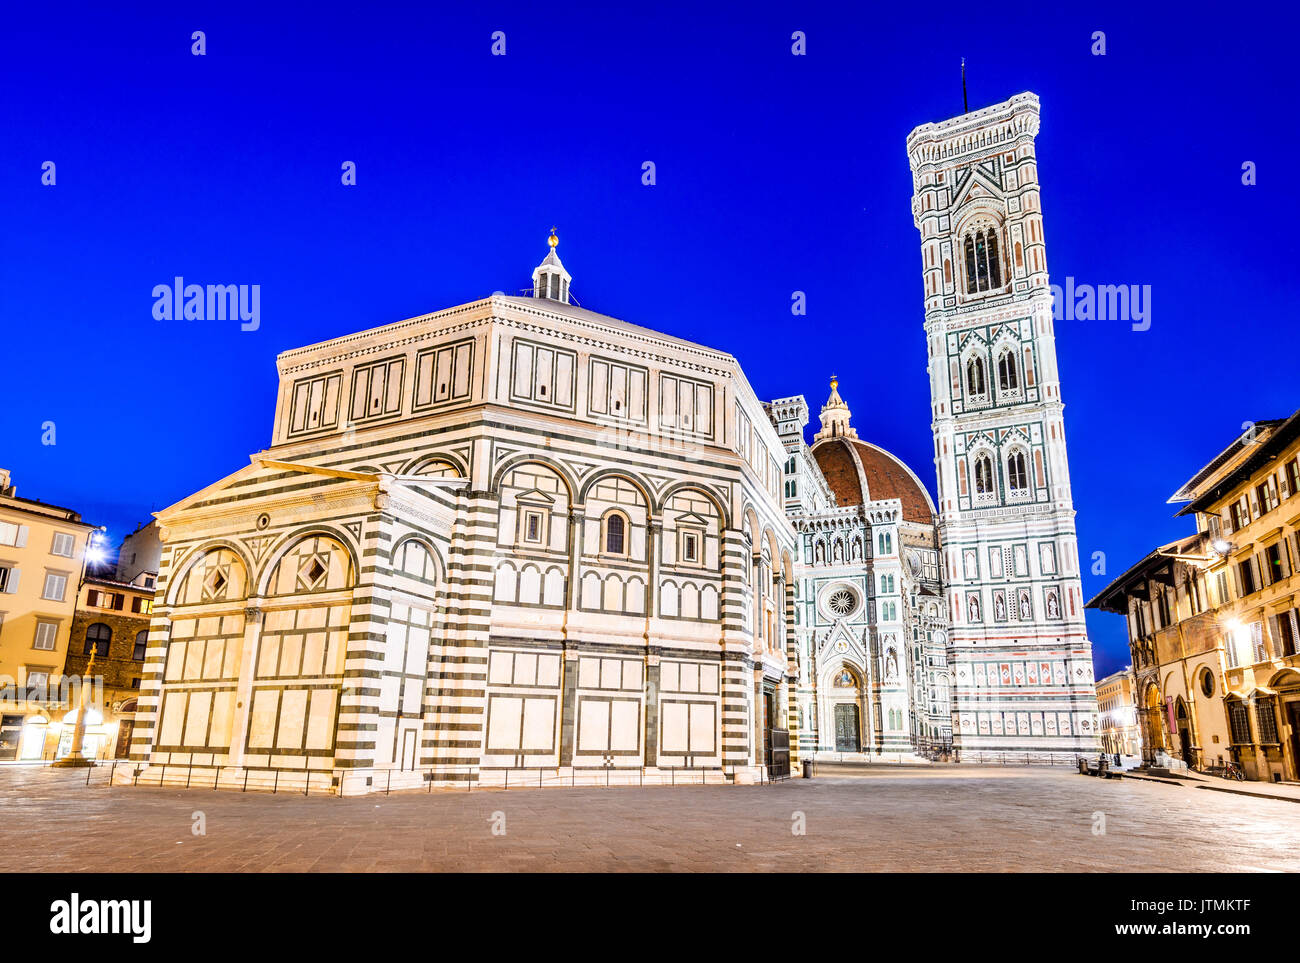 Florenz, Toskana - Nacht Landschaft mit der Piazza del Duomo und catedrale von Santa Maria del Fiori, Architektur der Renaissance in Italien. Stockfoto